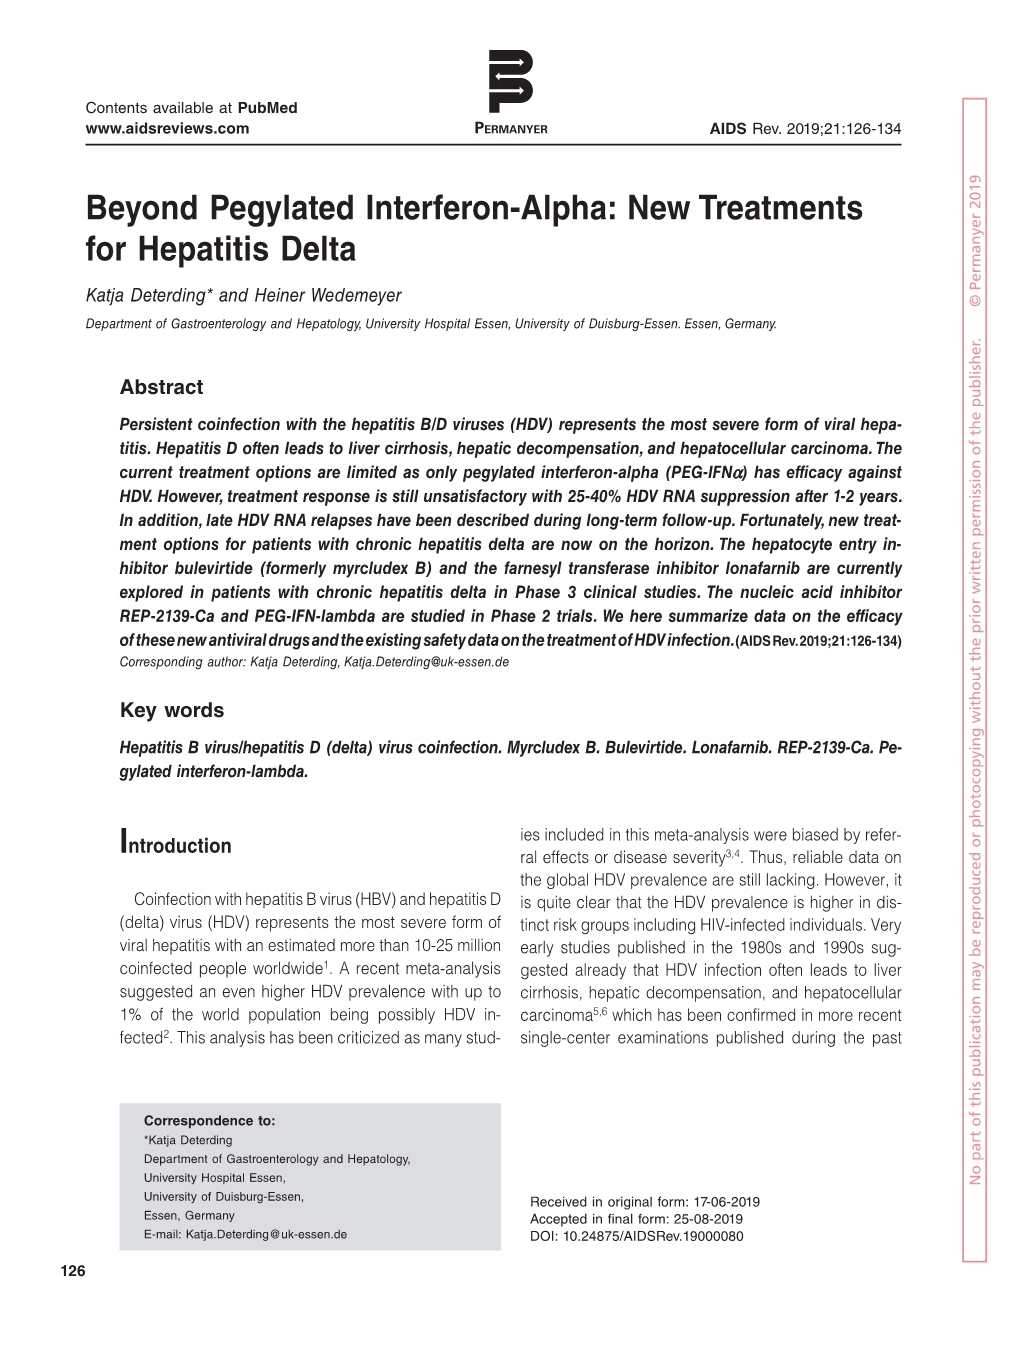 Beyond Pegylated Interferon-Alpha: New